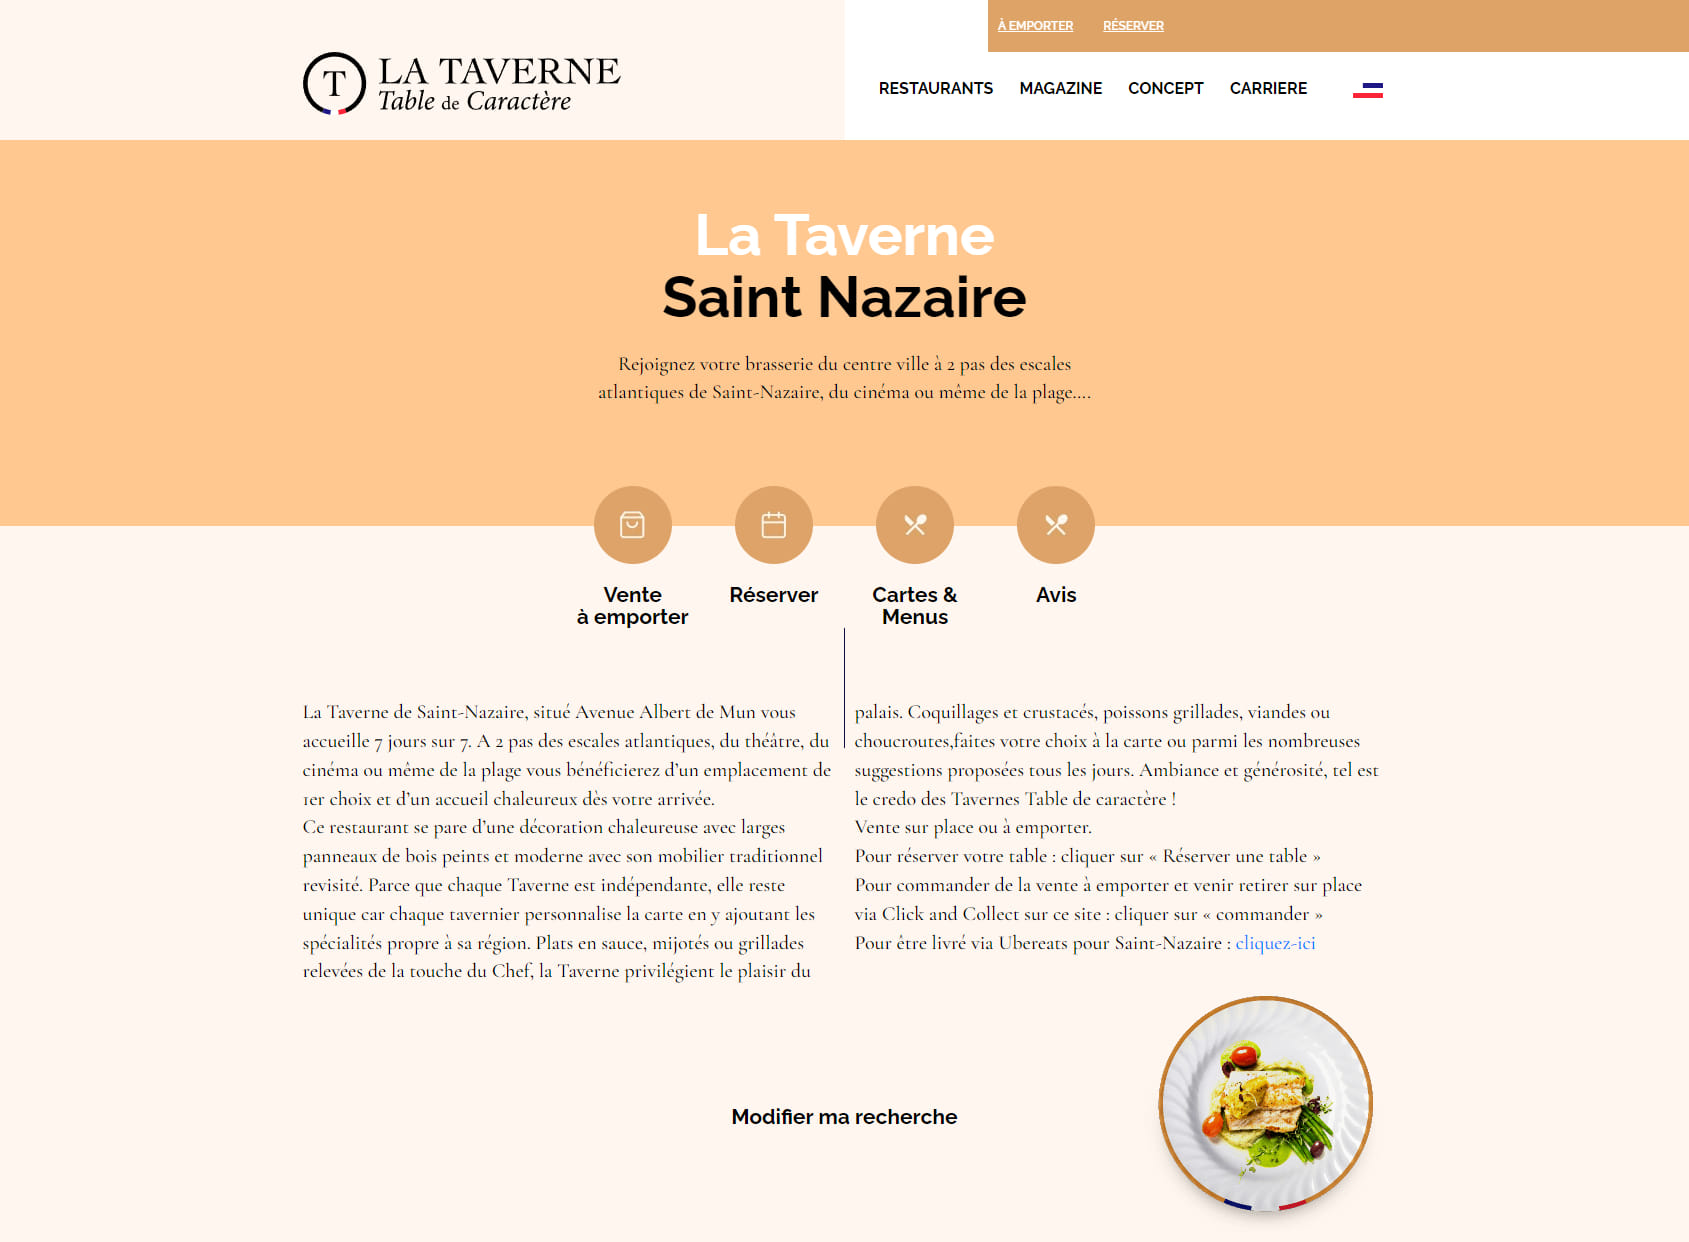 La Taverne - Saint Nazaire